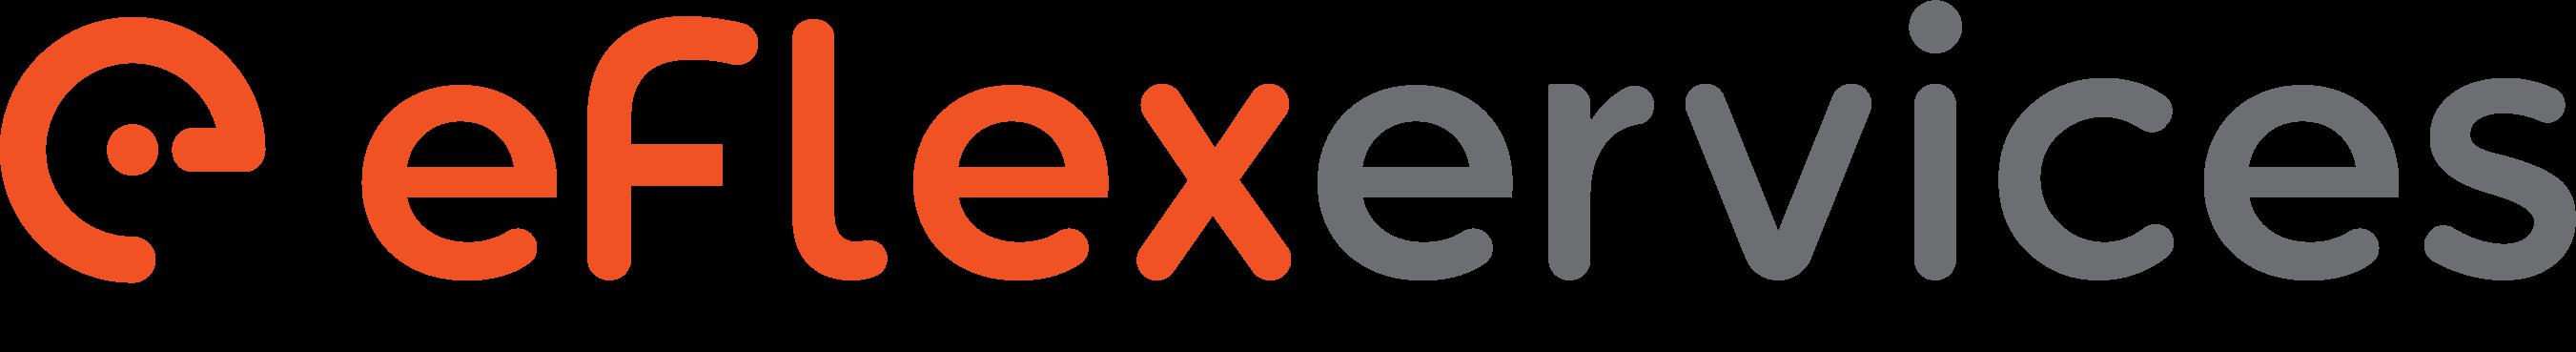 Eflexervices Inc